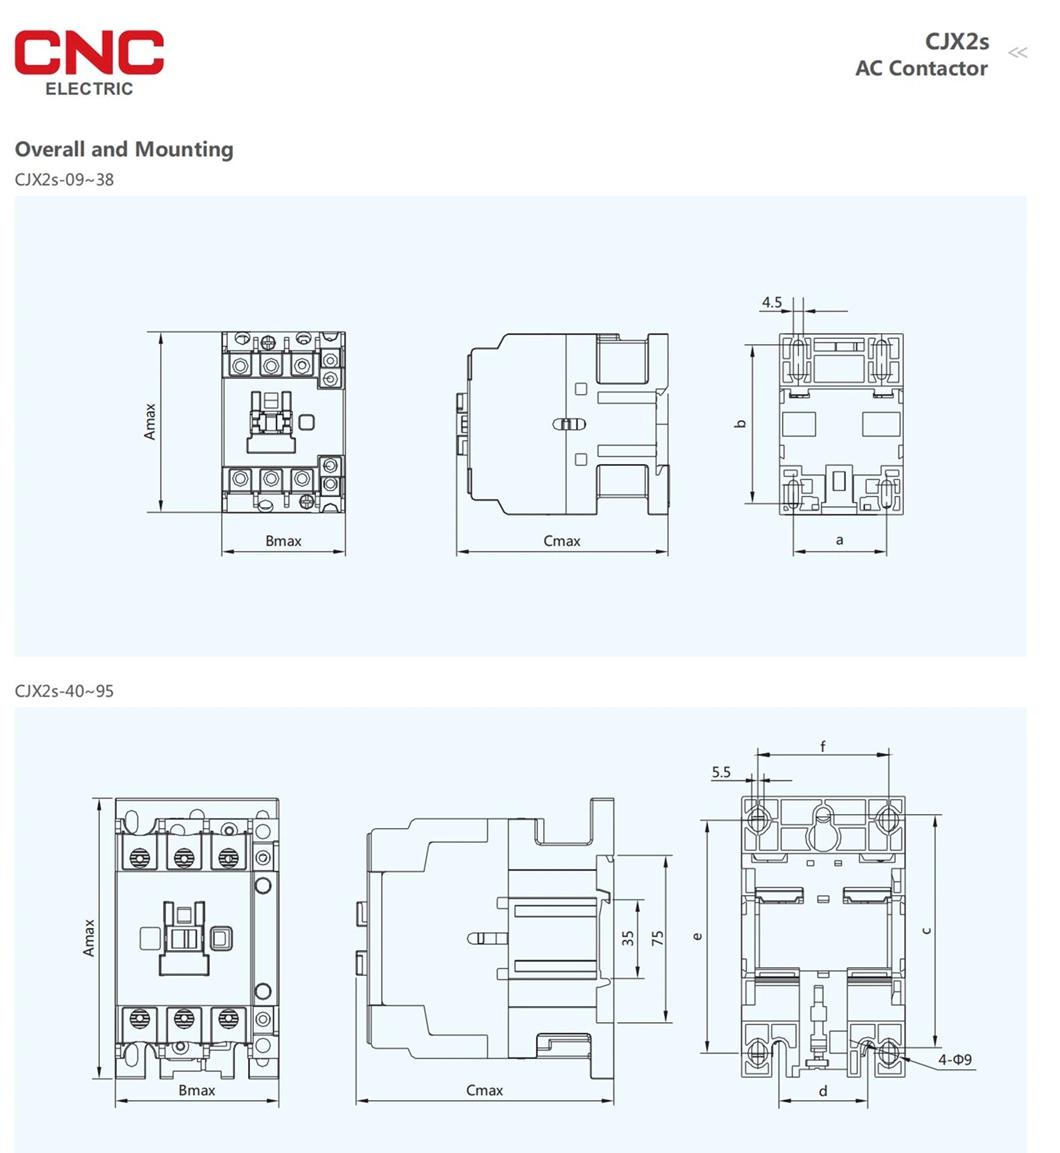 CNC New Design Professional 18A Magnetic AC Contactor 18A Contactor 380V 18A Contactor